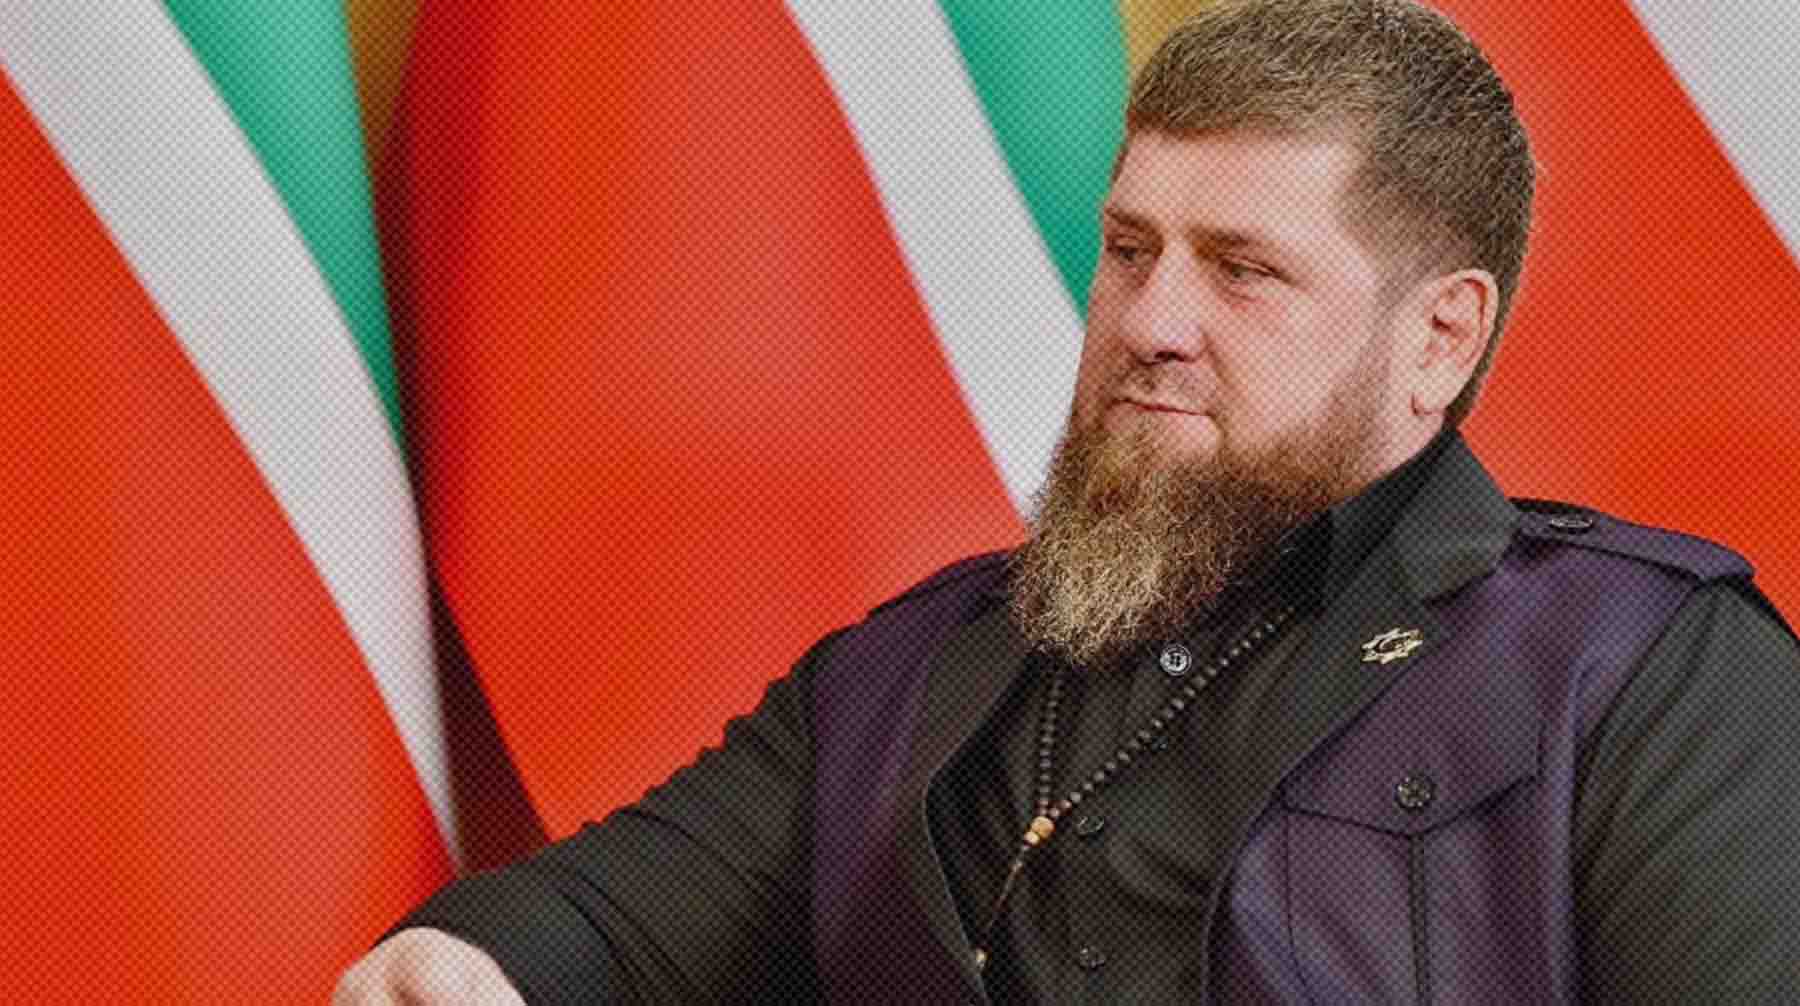 Глава Чечни сопроводил публикацию словами «а ведь я предупреждал...» и смайликом undefined